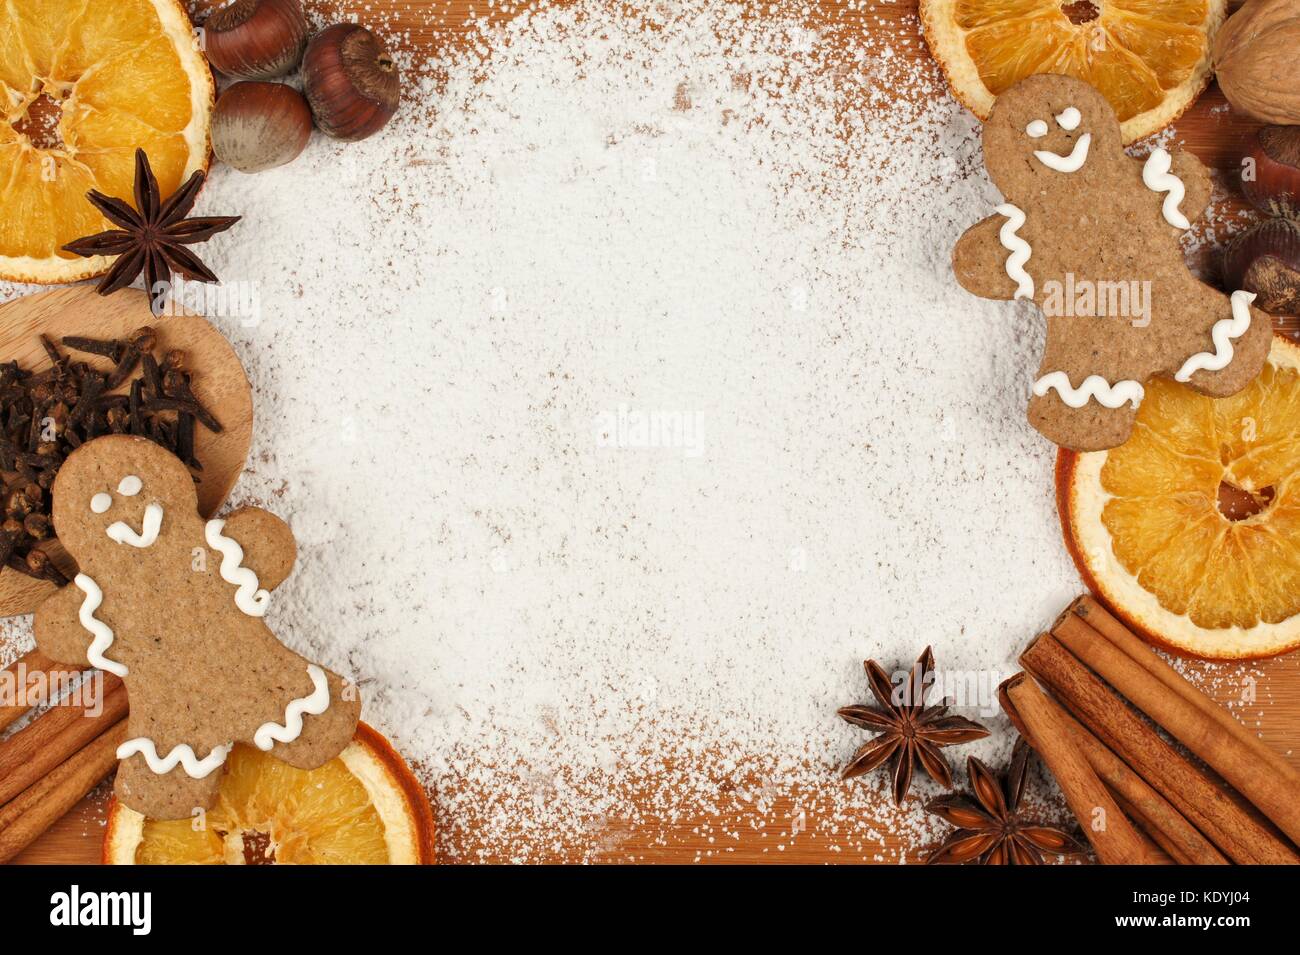 Hornear vacaciones marco temático con hombres de pan de jengibre, nueces y especias sobre un fondo de azúcar en polvo Foto de stock